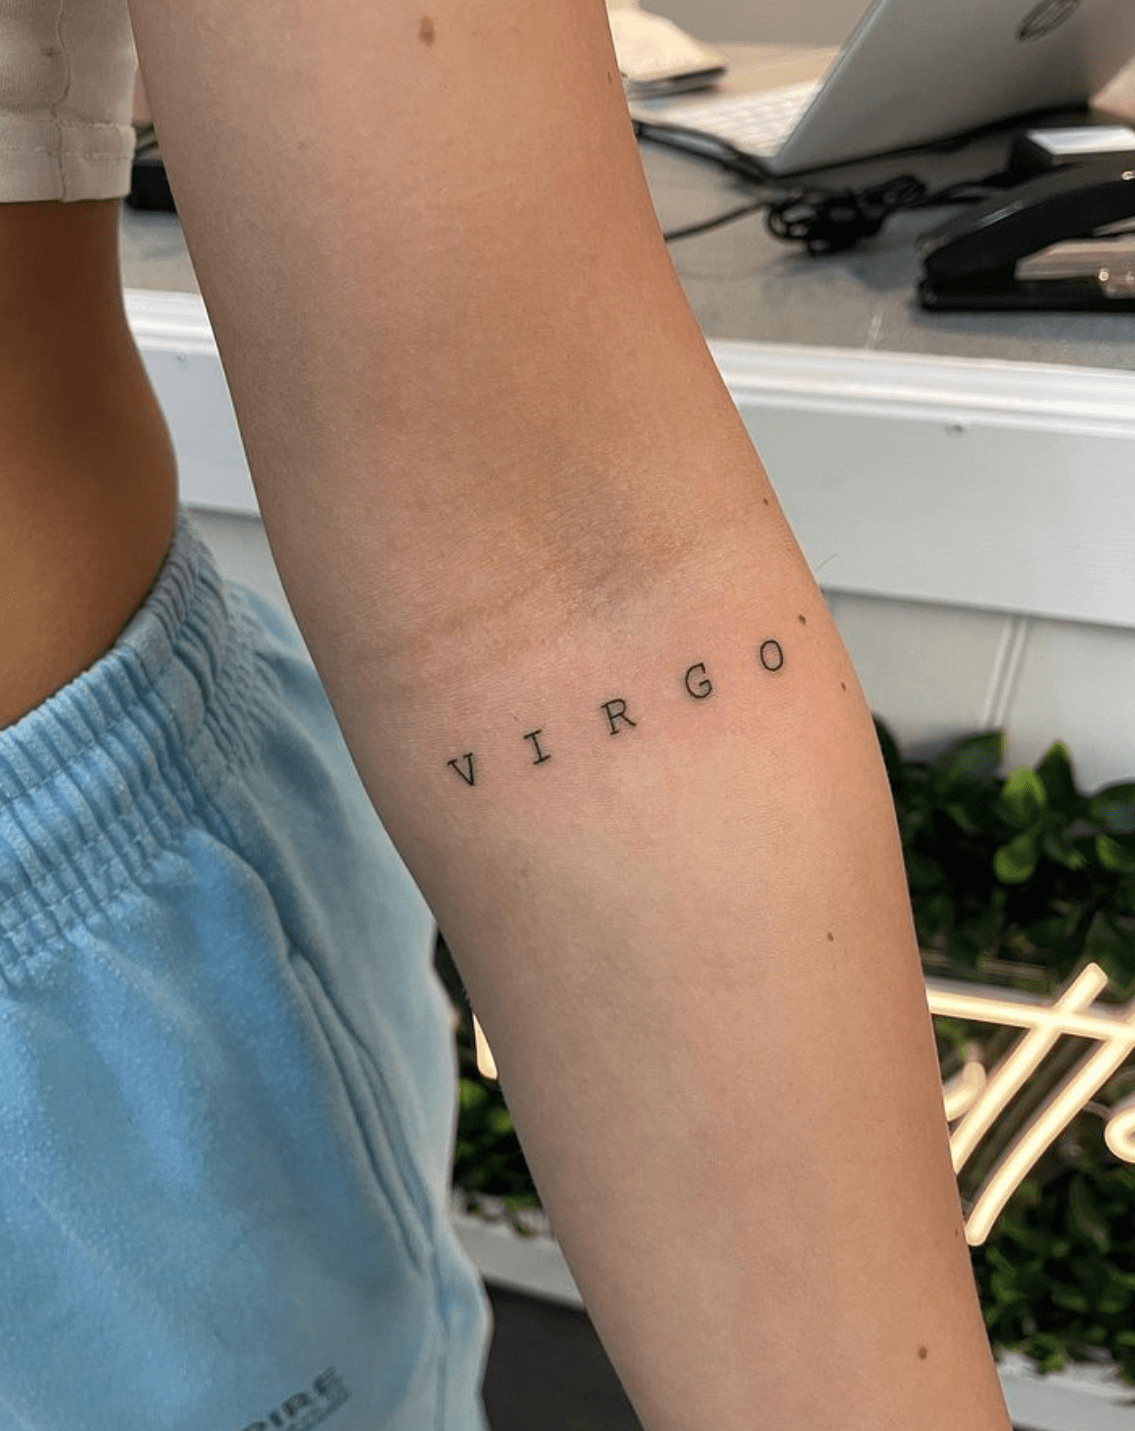 Voorkoms Virgo zodiac sign horoscope Temporary Body Tattoo Waterproof For  Girls Men Women Beautiful & Popular Water Transfer Size 11CM x 6CM - 1Pcs :  Amazon.in: Beauty